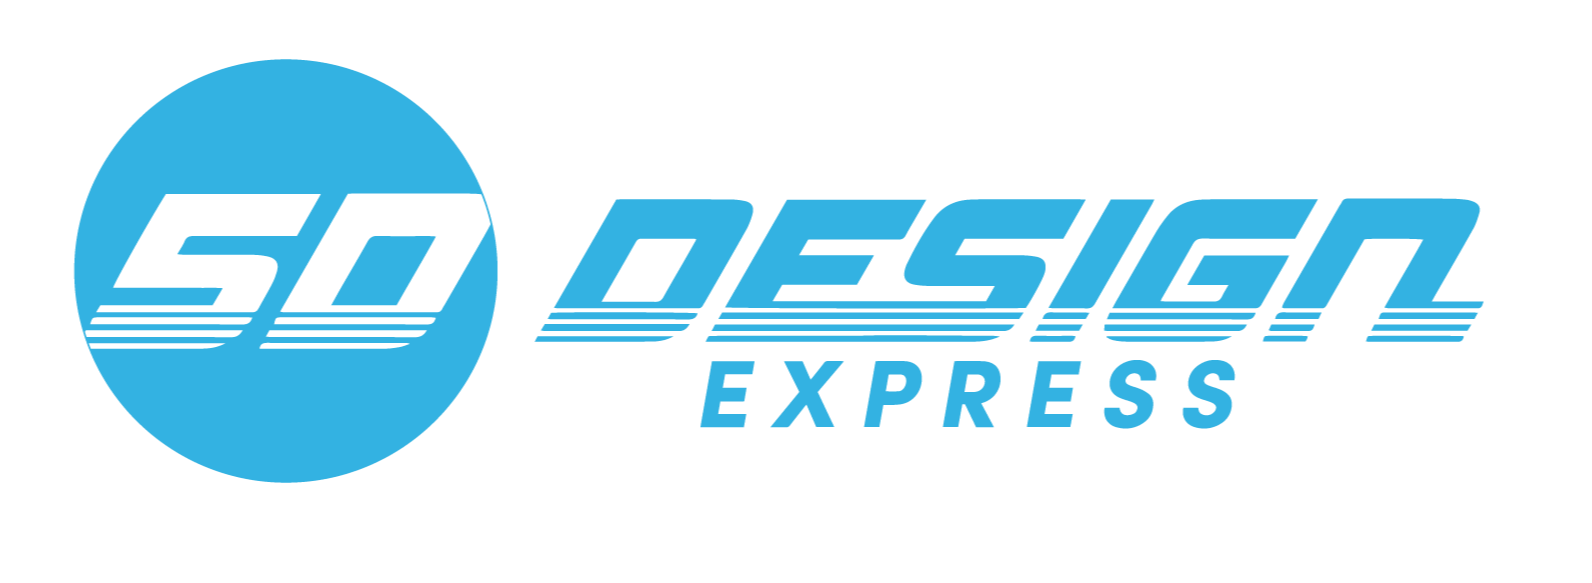 5D Design Express